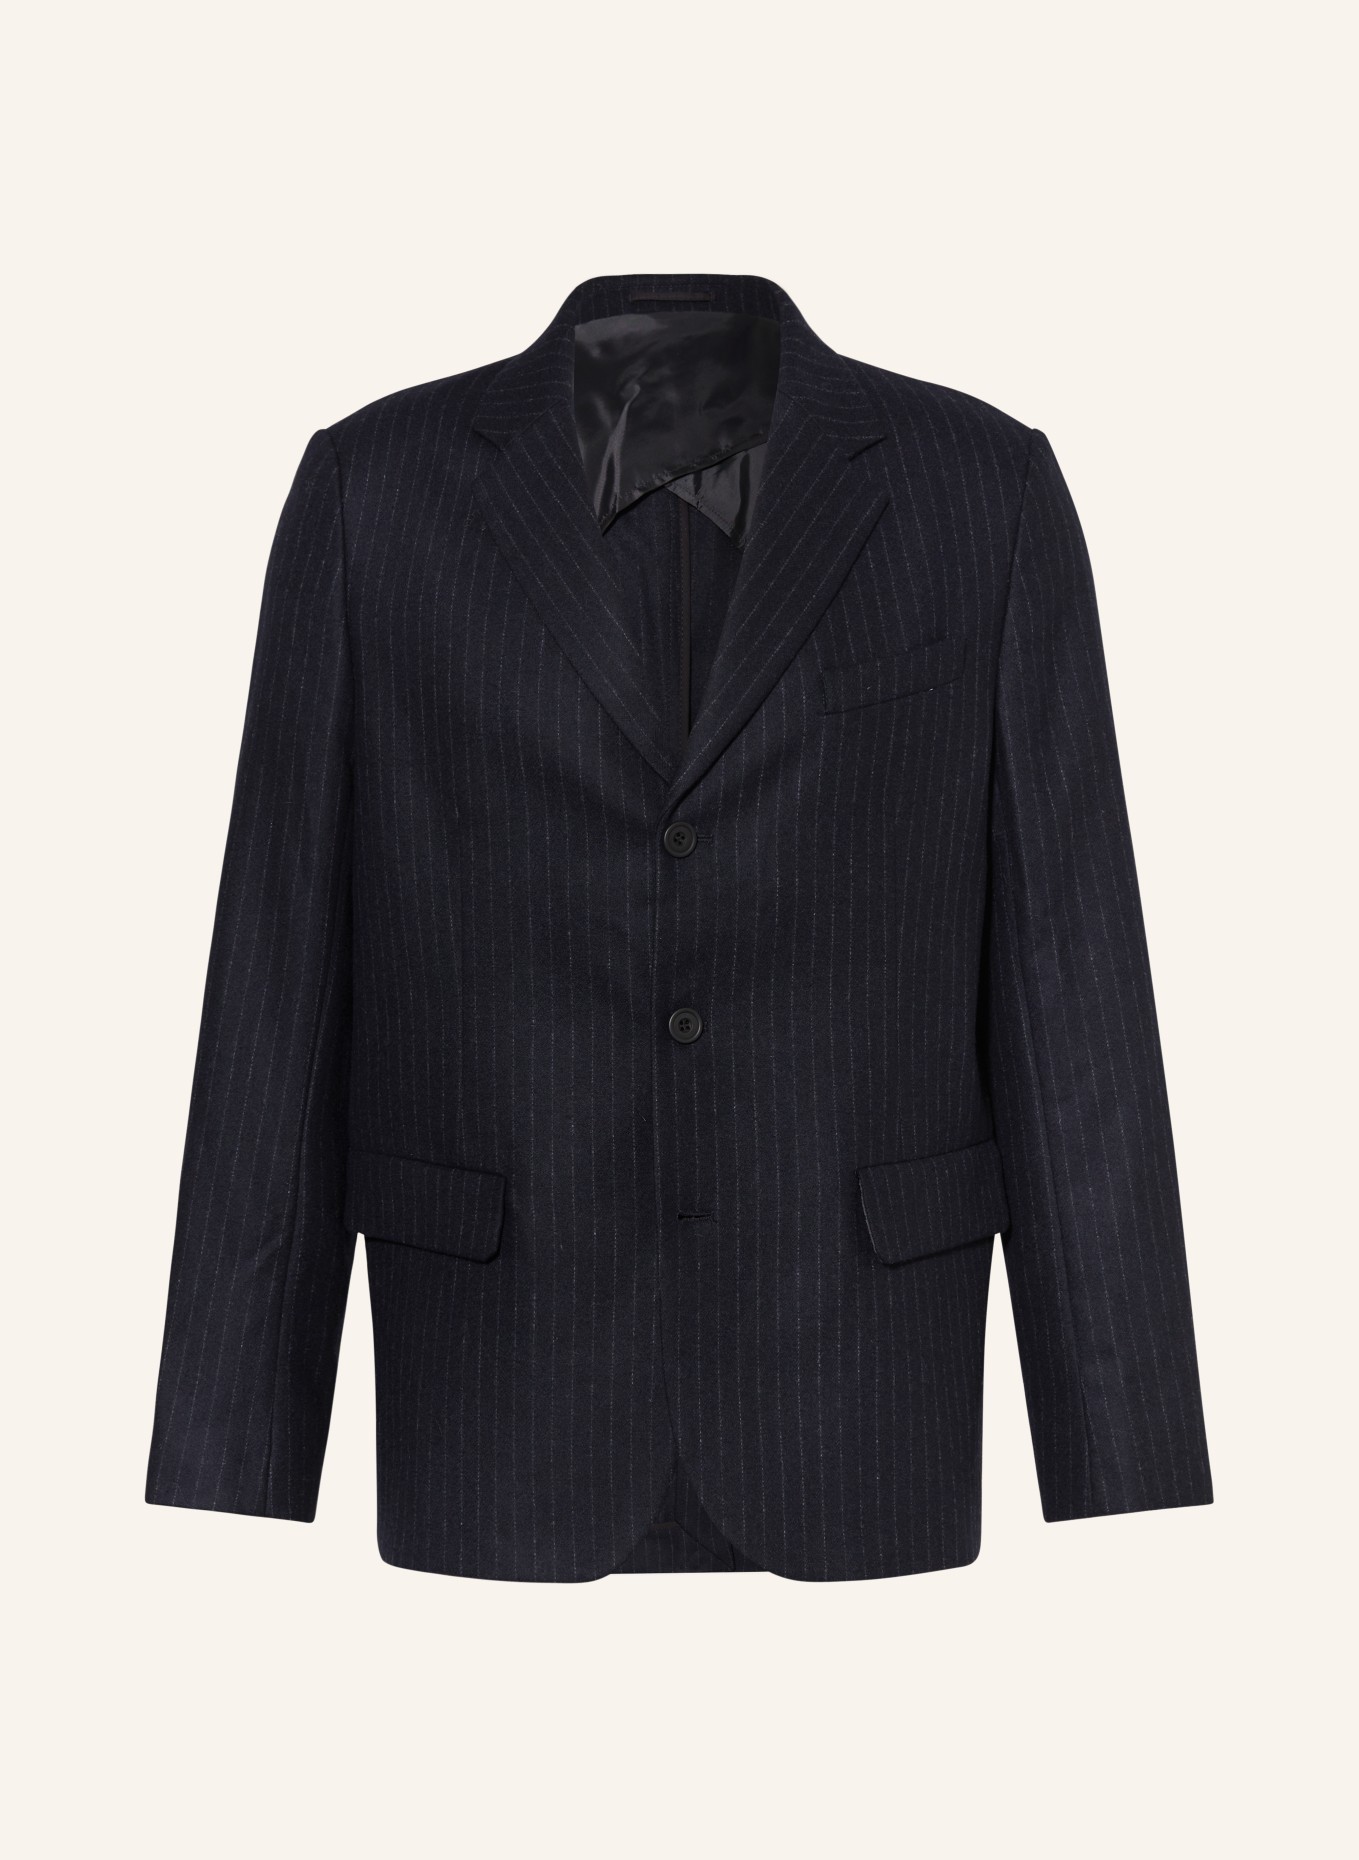 COS Tailored jacket regular fit, Color: 001 Blue Dark (Image 1)